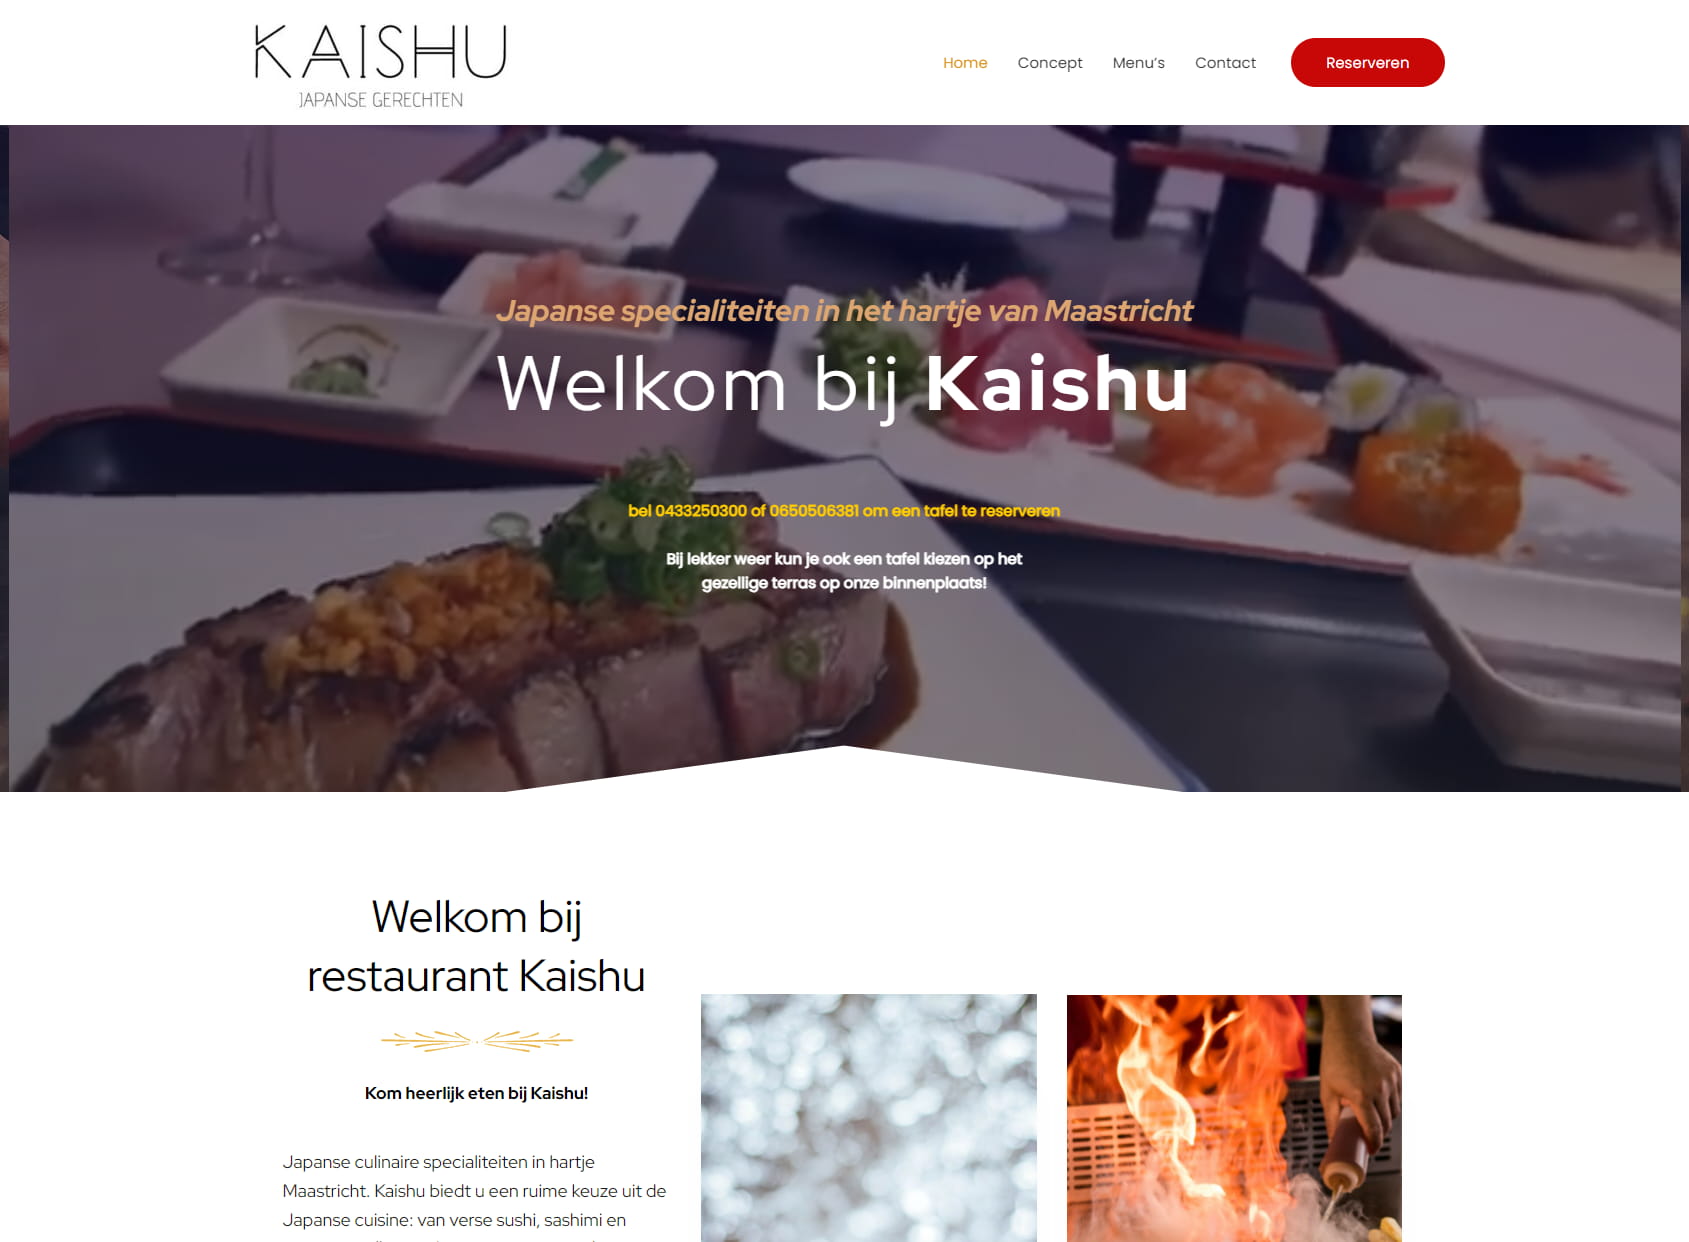 Kaishu